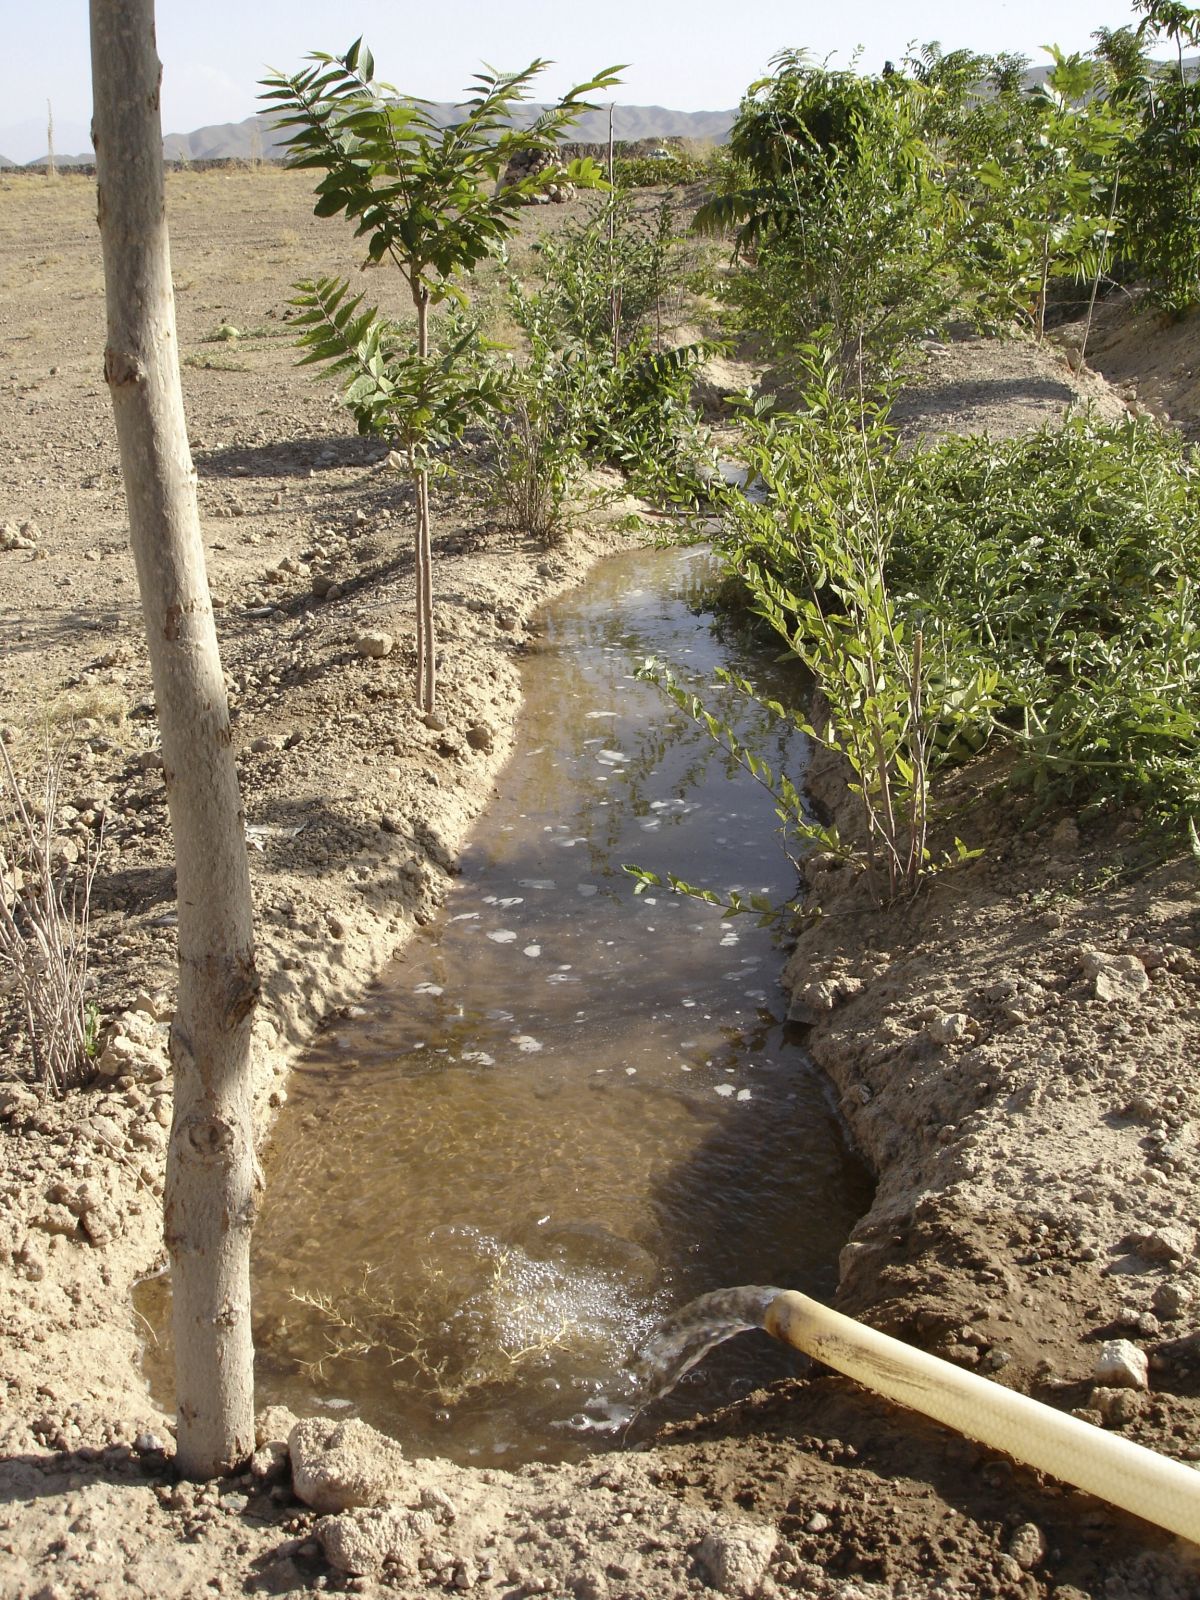 Eine Intensivierung der syrischen Landwirtschaft verursachte einen massiven Wasserverbrauch durch künstliche Bewässerung, der die Grundwasserreserven größtenteils aufbrauchte.